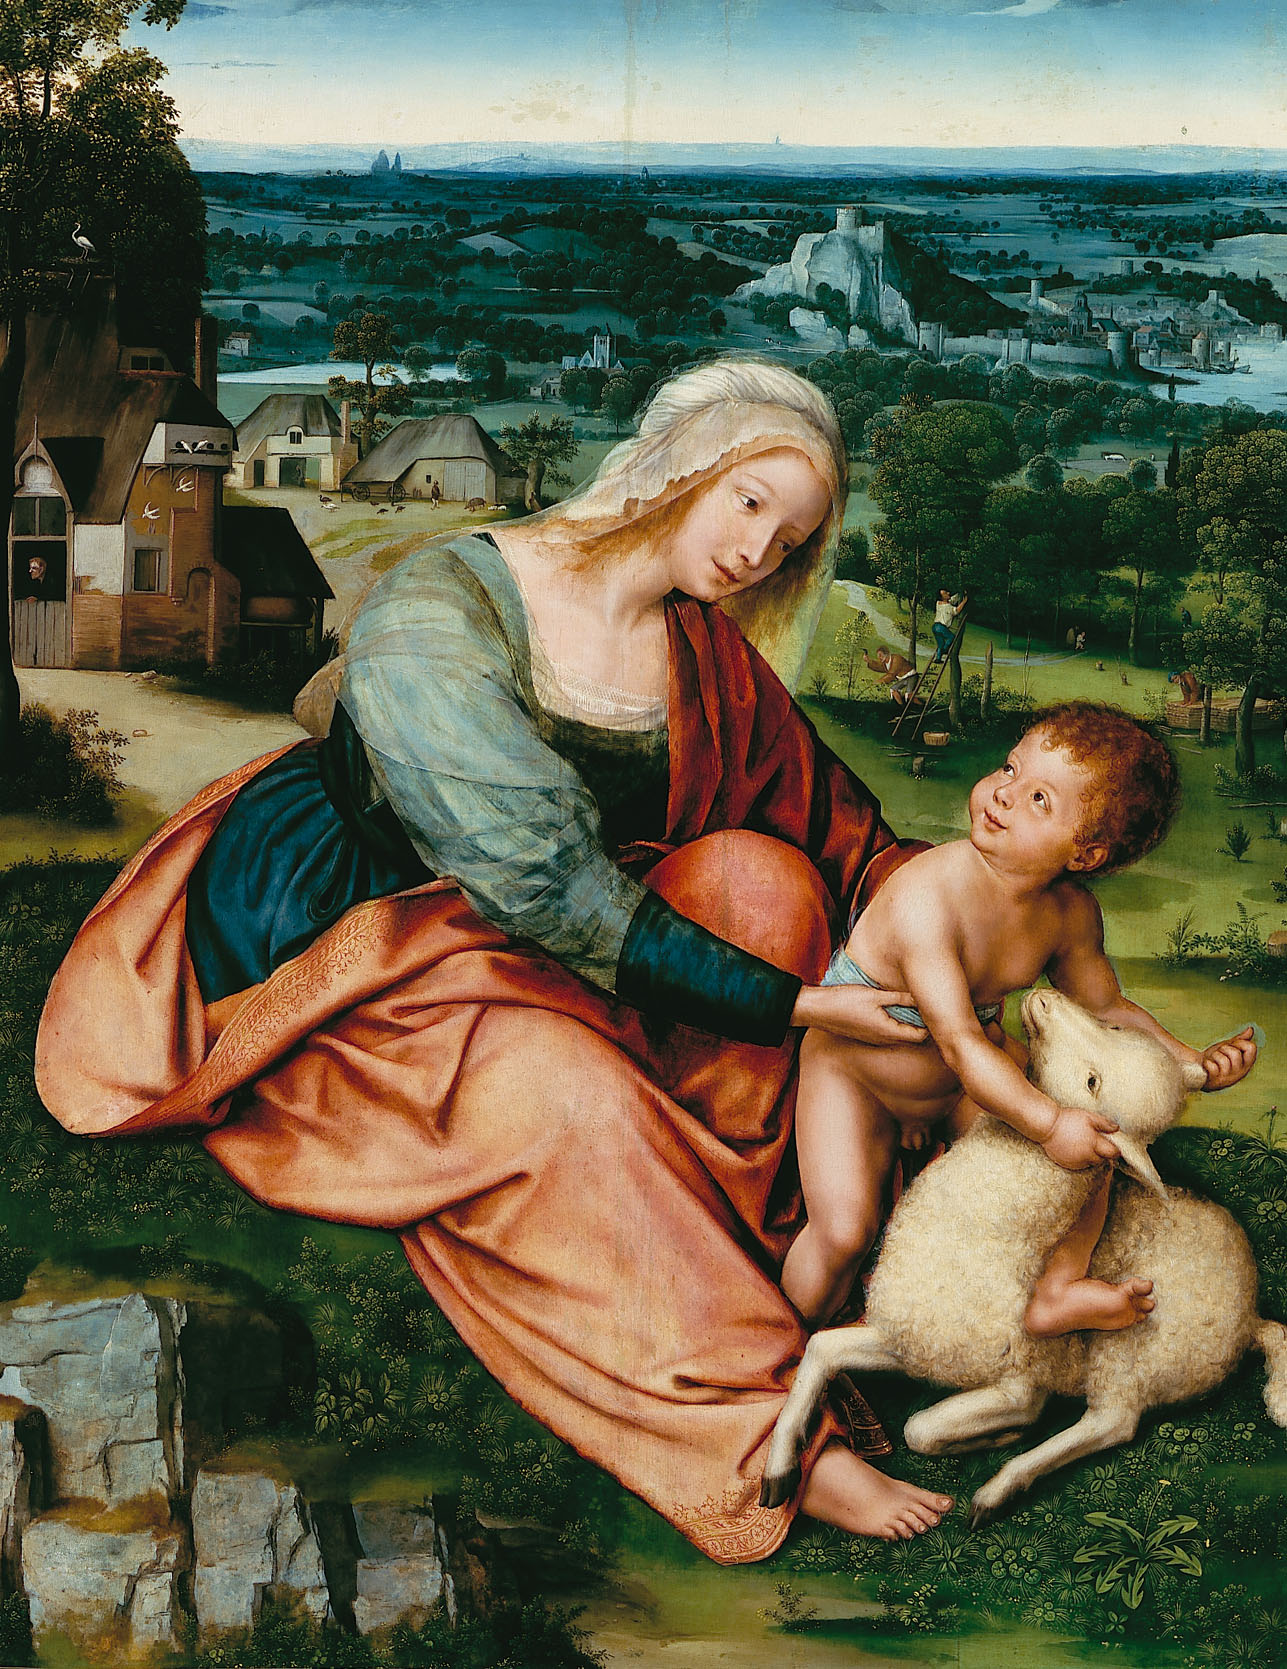 Kategoria dotyk: Quentyn Massays obraz „Madonna z Dzieciątkiem” 1520 Obraz przedstawia Madonnę z Dzieciątkiem i barankiem. Scena rozgrywa się w plenerze. Na pierwszym planie dominują intensywne kolory: czerwień, błękit, biel, róż oraz zieleń. Drugi plan utrzymany jest w spokojnej kolorystyce z dominującą rolą zieleni. Na trzecim planie różne odcienie błękitu.